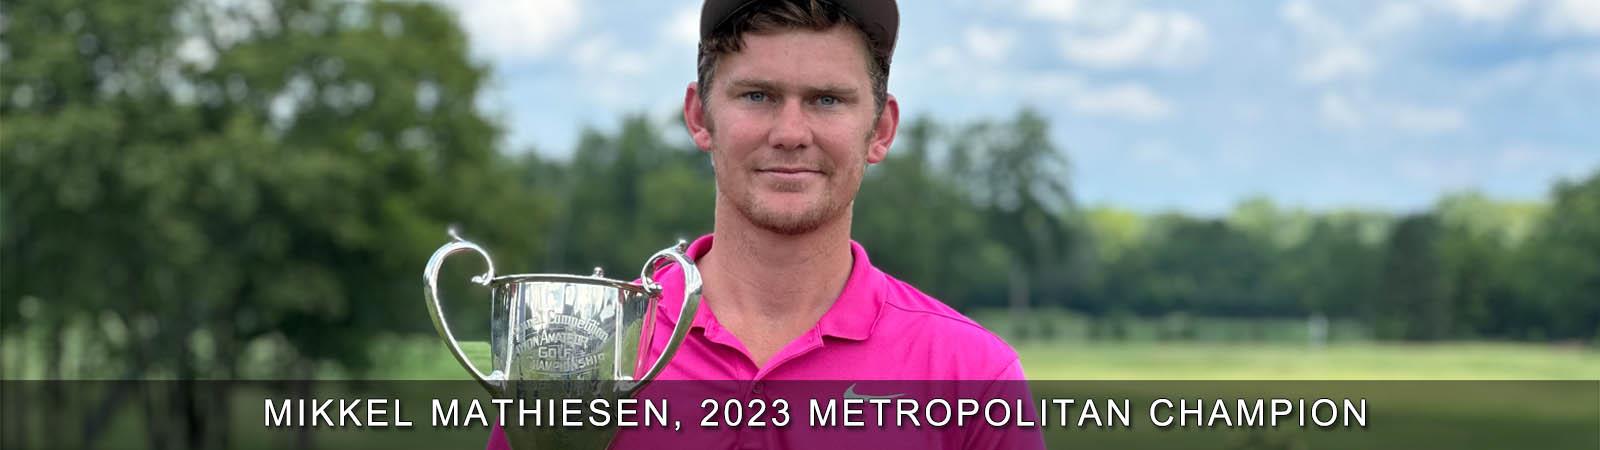 2022_-_Mikkel_Mathiesen_Championship_Banner